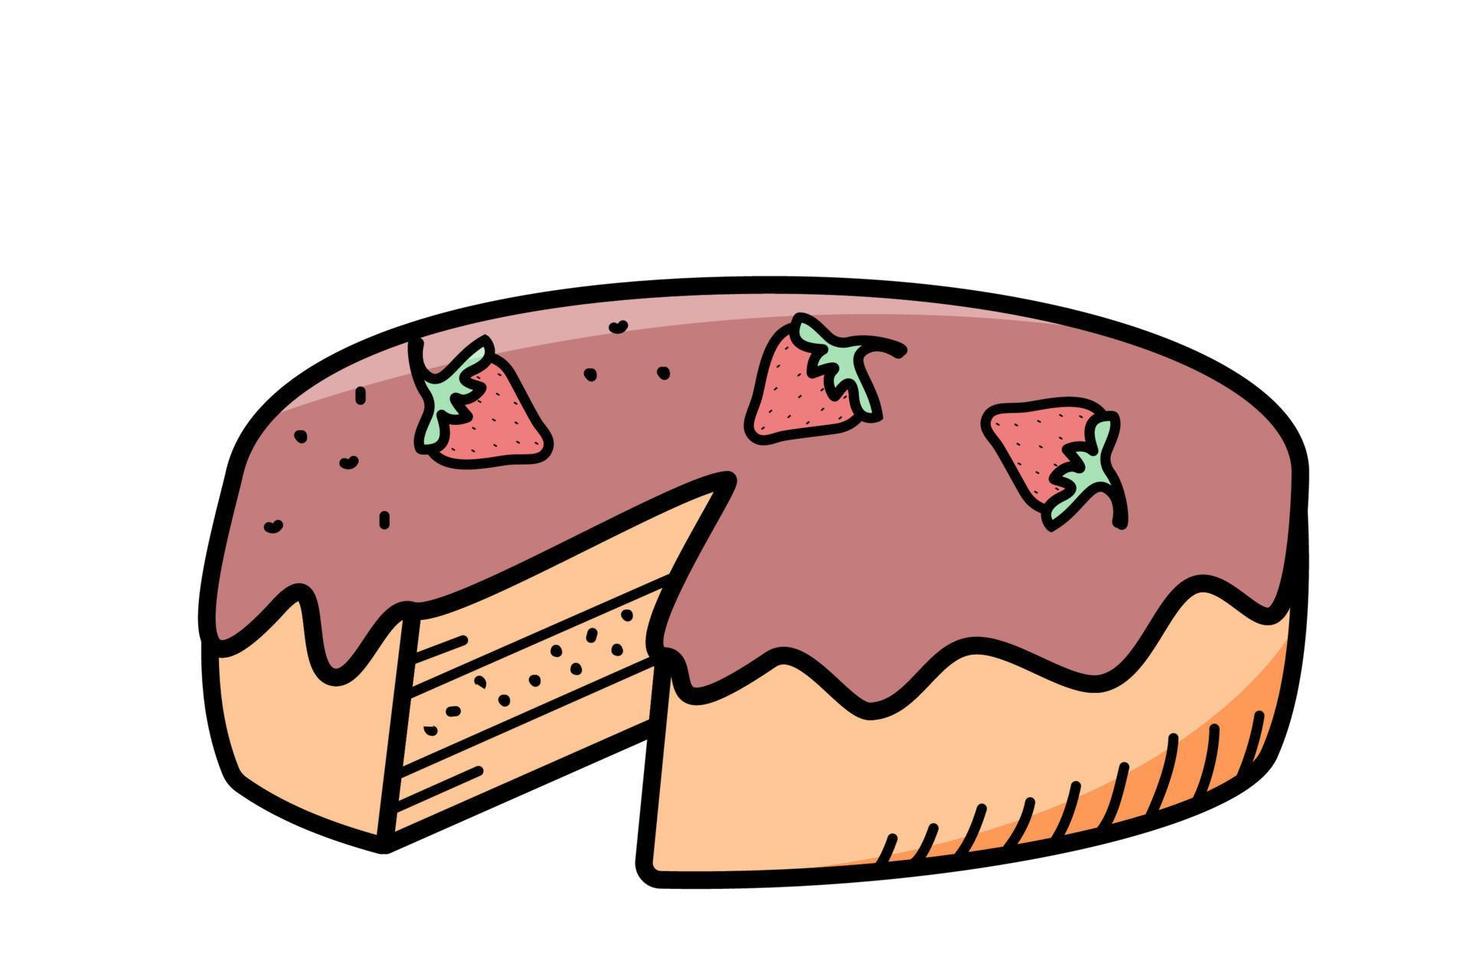 zoet chocola taart met aardbei bessen, vector illustratie van tekening stijl.